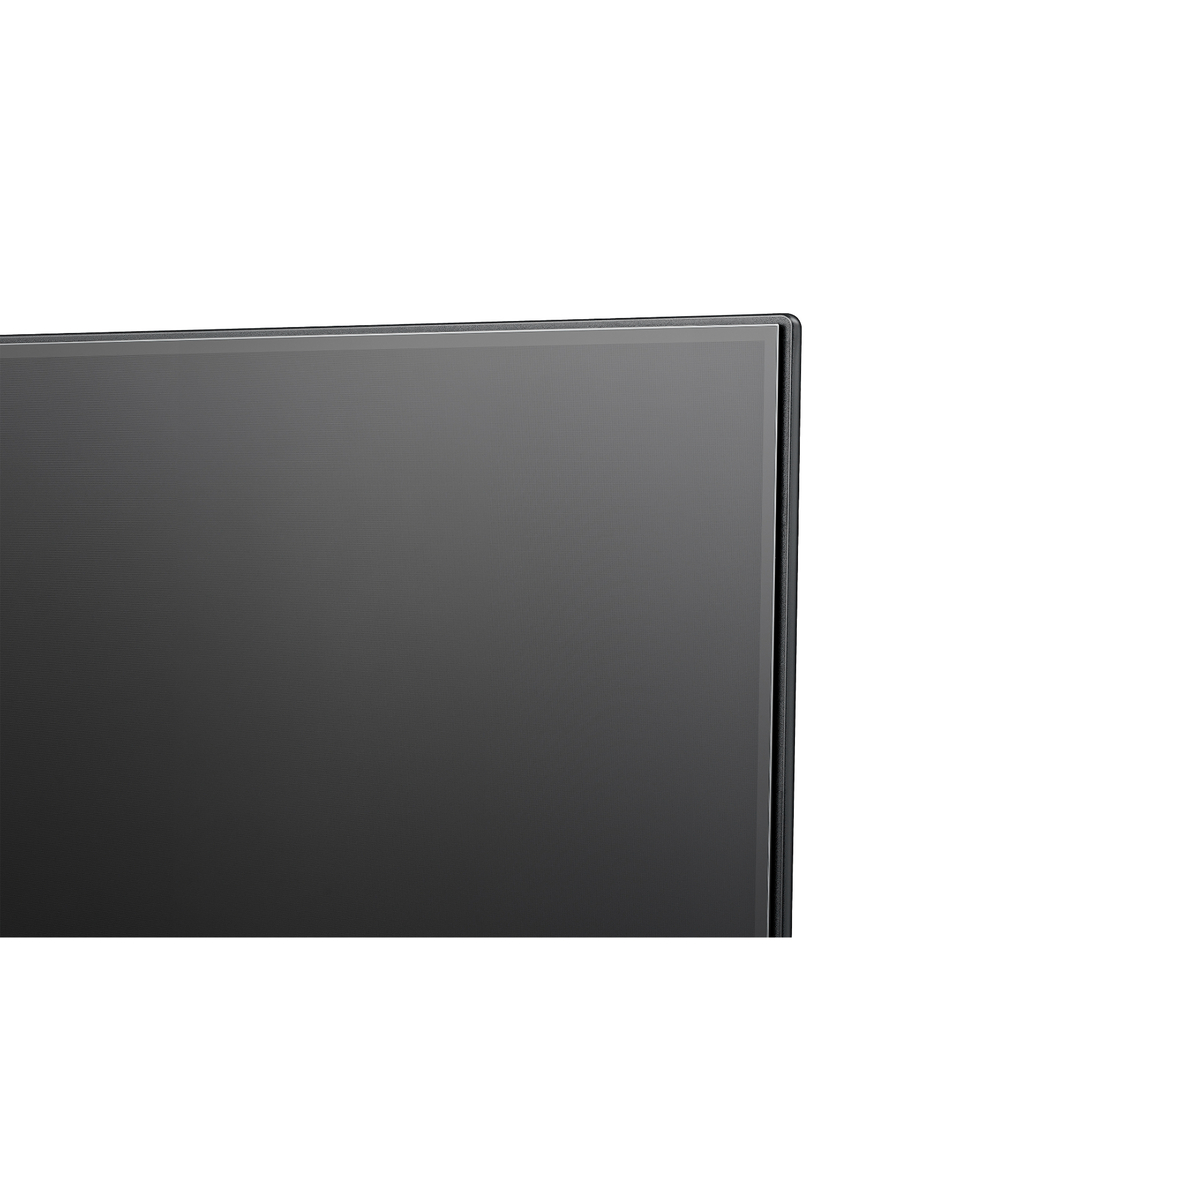 Hisense 50 inches UHD Smart LED TV, Black, 50A62K